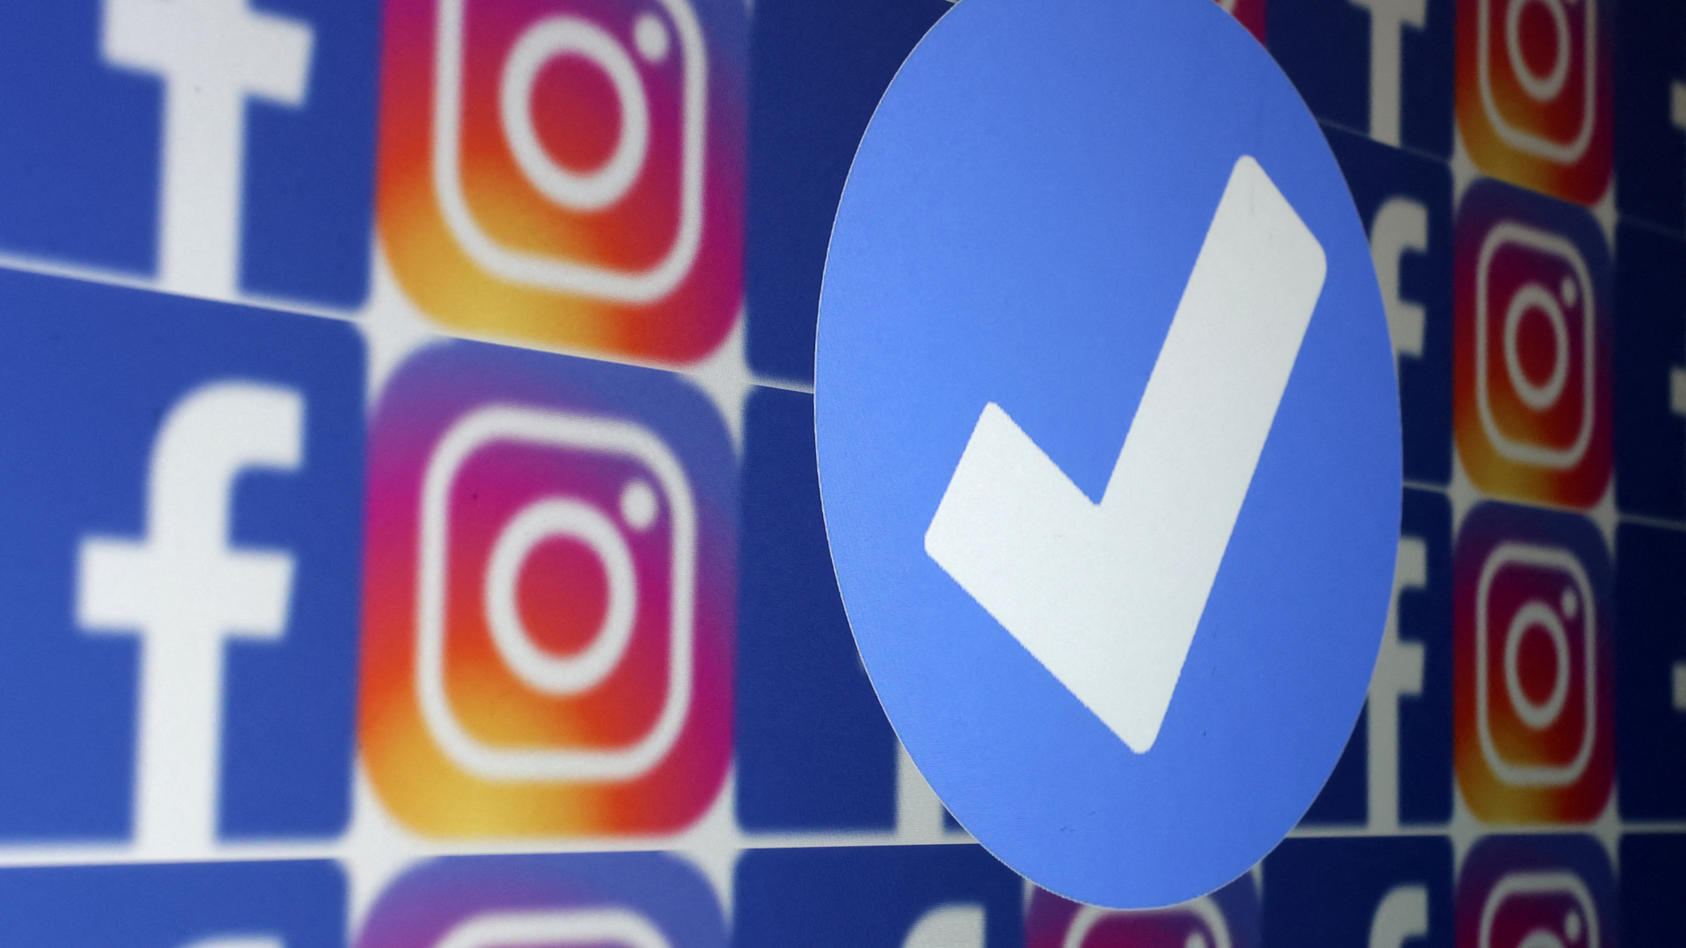 Blauer Haken bei Facebook und Instagram